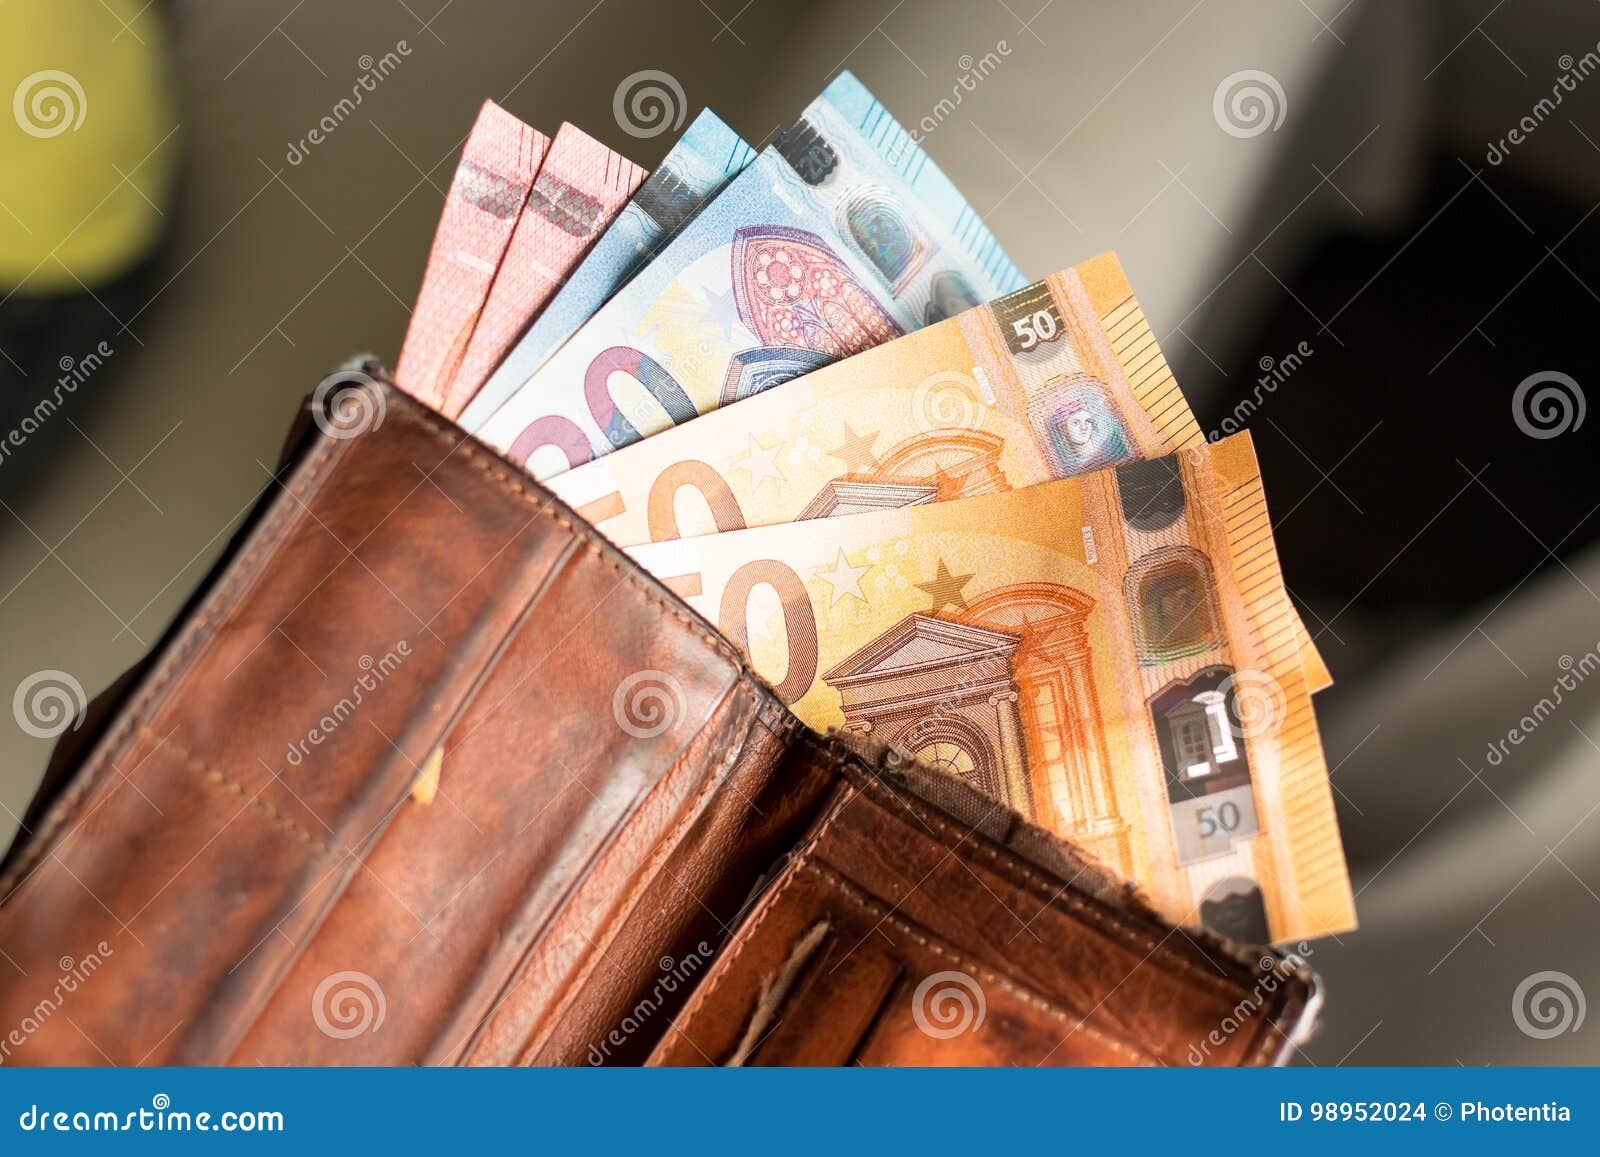 euro bills in a wallet